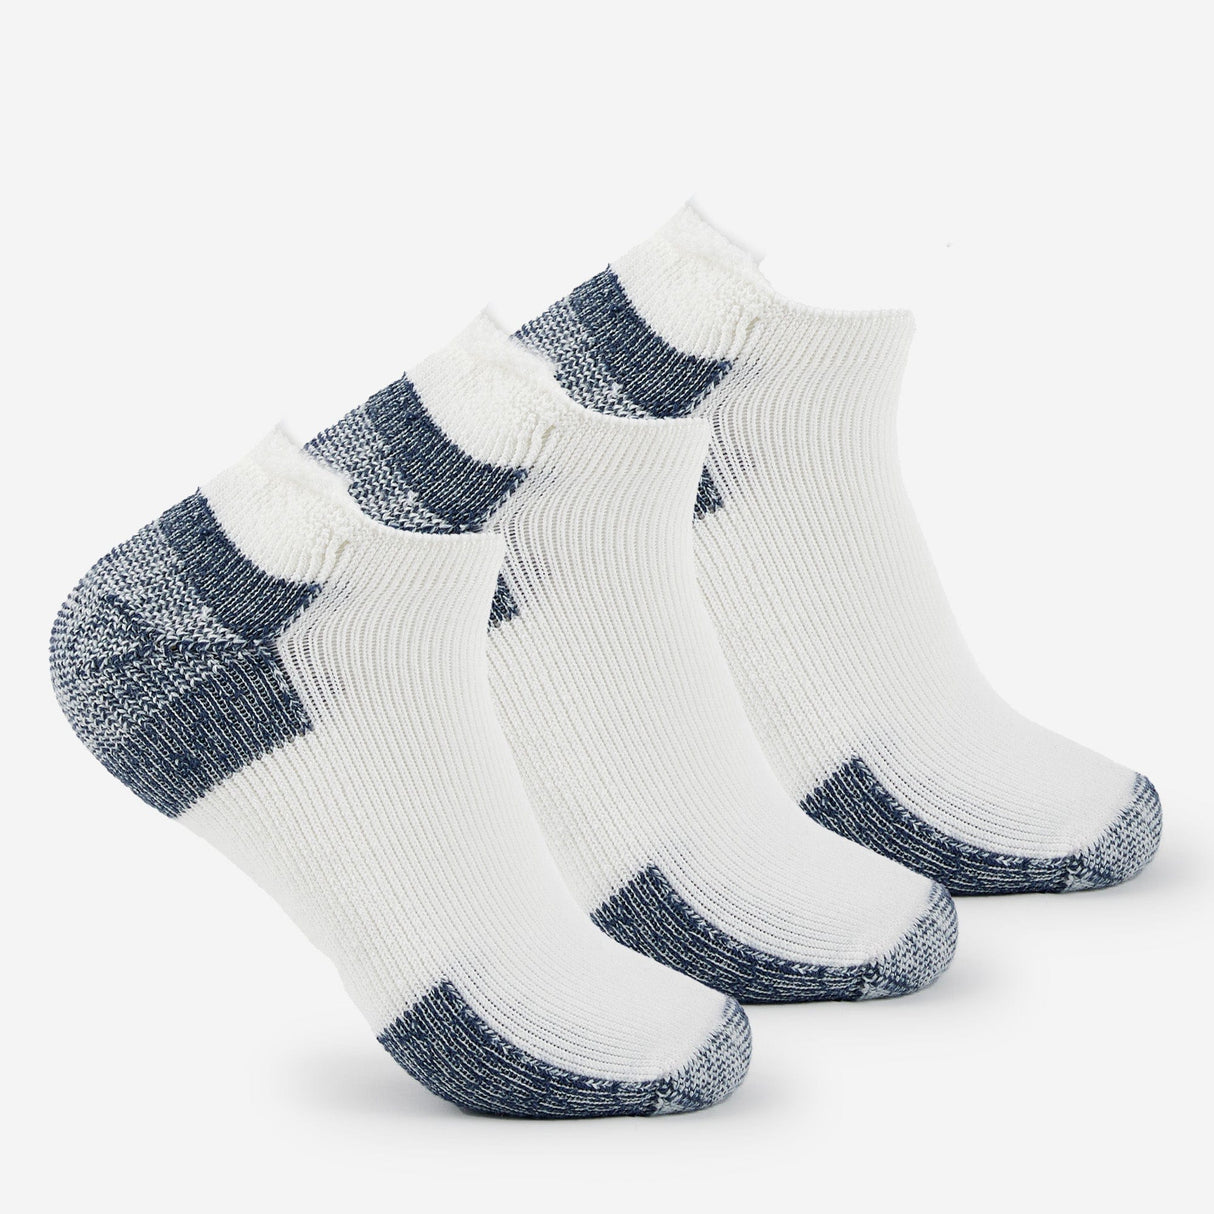 Thorlo Running Maximum Cushion Rolltop Socks  -  Large / White/Navy / 3-Pair Pack